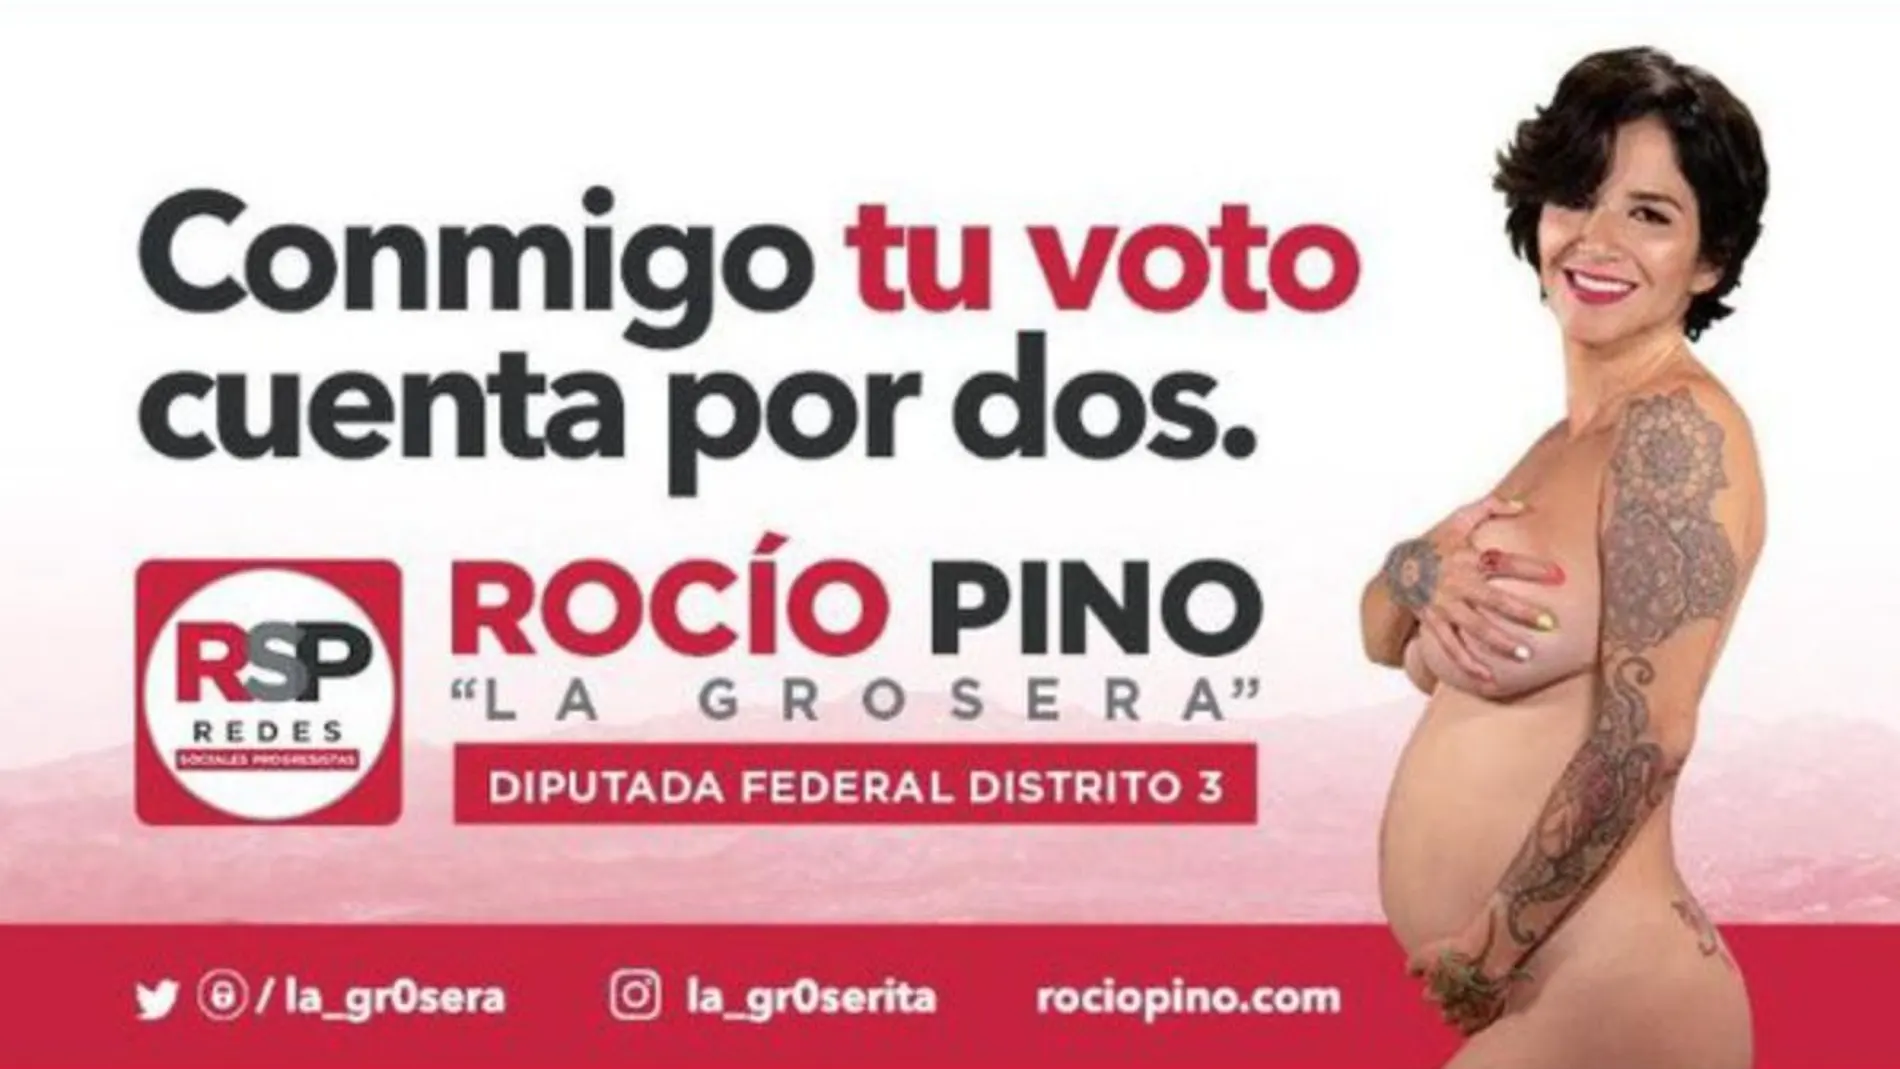 La mexicana Rocío Pino, conocida como la Grosera en la plataforma en línea OnlyFans, quiere convertirse en diputada federal por el estado de Sonora